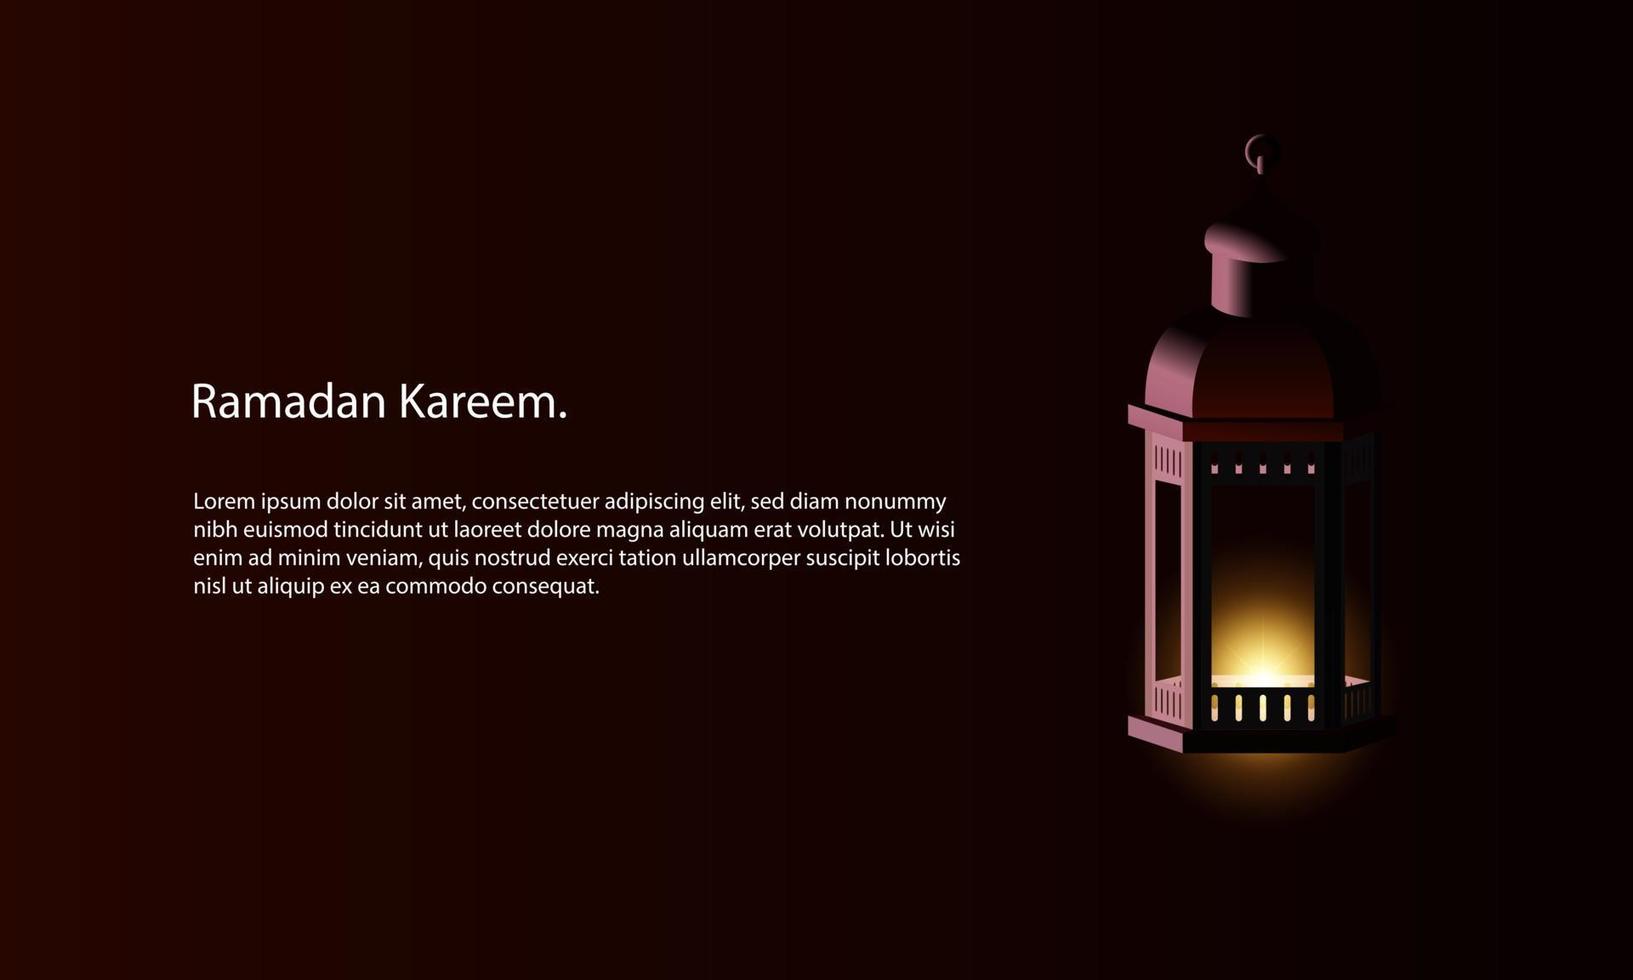 grafica vettoriale del ramadan kareem con lanterna. adatto per biglietti di auguri, sfondi e altro.